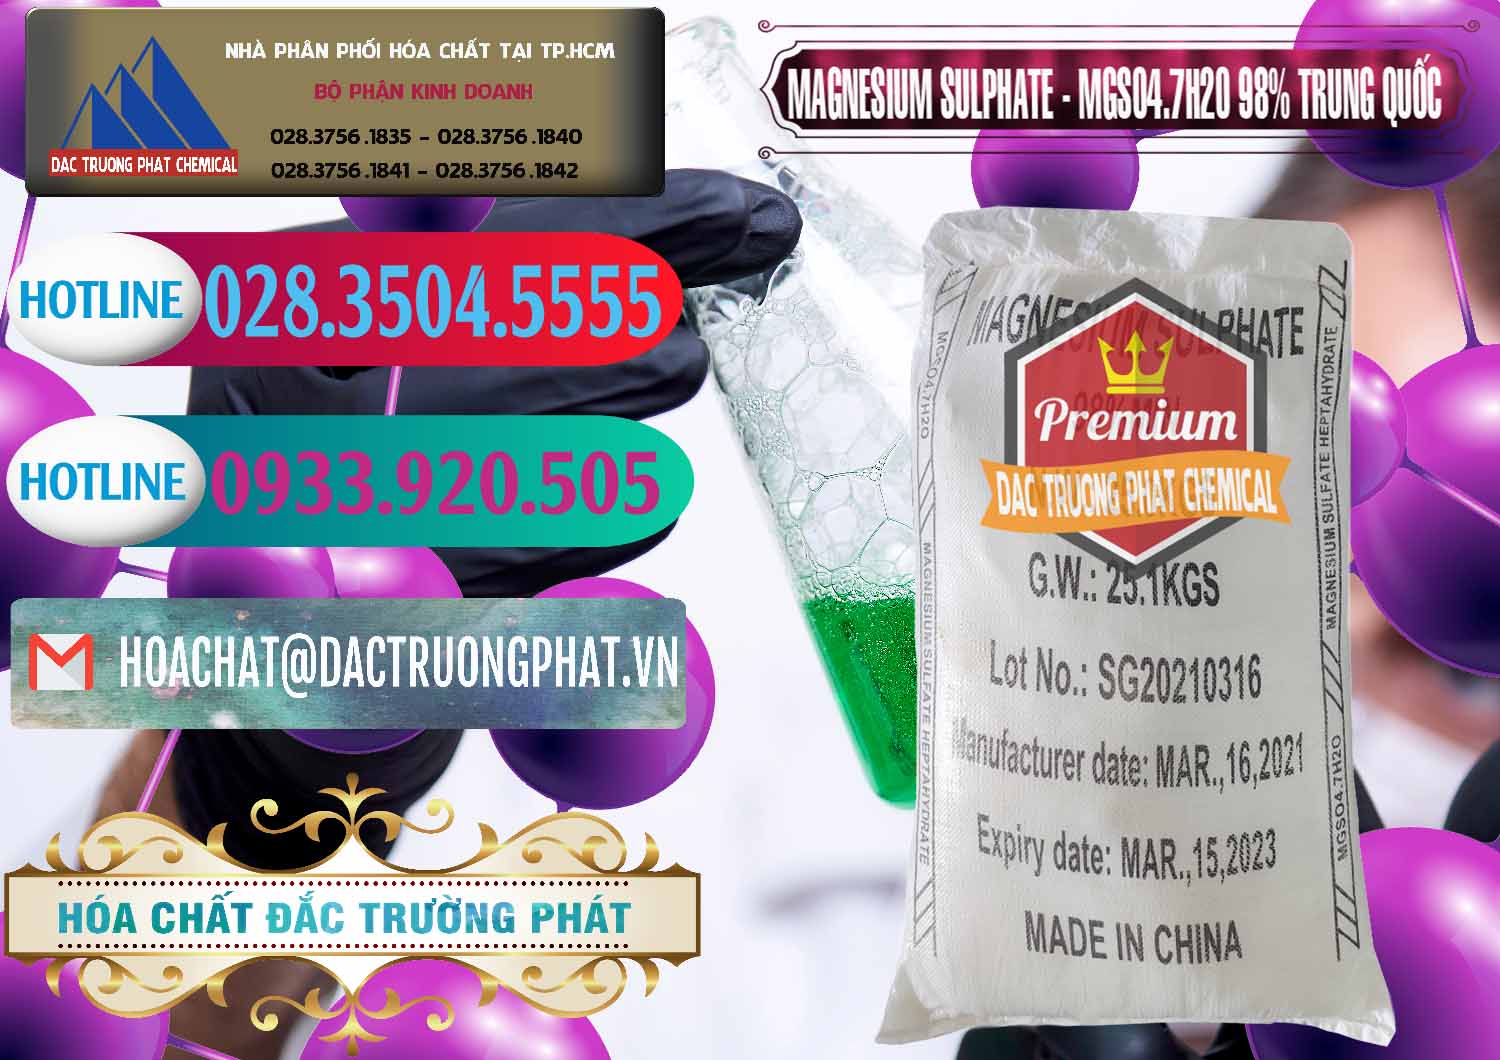 Nơi cung ứng _ bán MGSO4.7H2O – Magnesium Sulphate 98% Trung Quốc China - 0229 - Nhập khẩu _ phân phối hóa chất tại TP.HCM - truongphat.vn